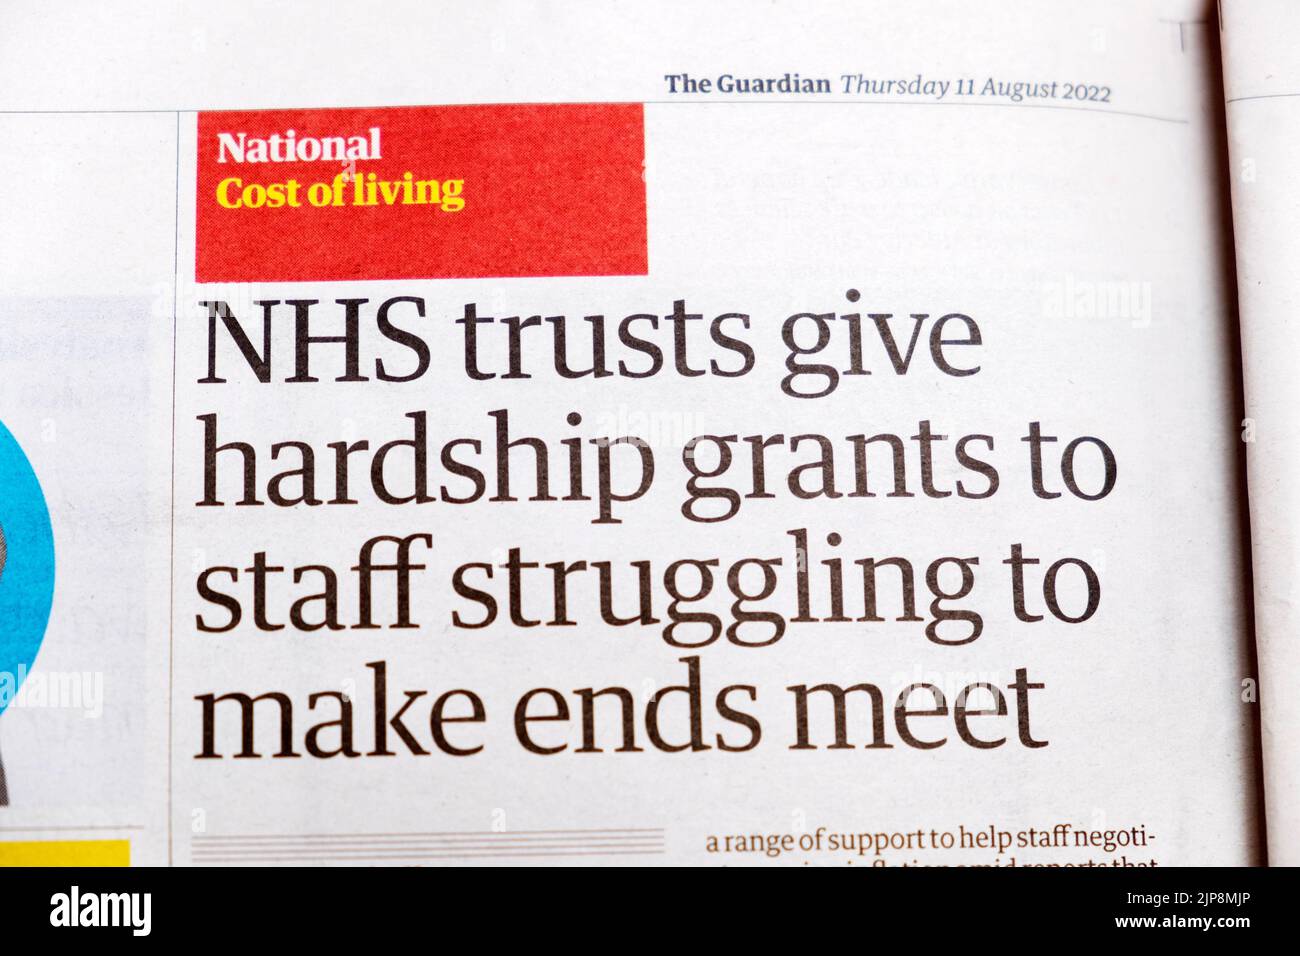 "NHS trust dare sussidi di difficoltà al personale che lotta per far fine incontrare" Guardian giornale costo della vita 11 agosto 2022 Londra UK Foto Stock